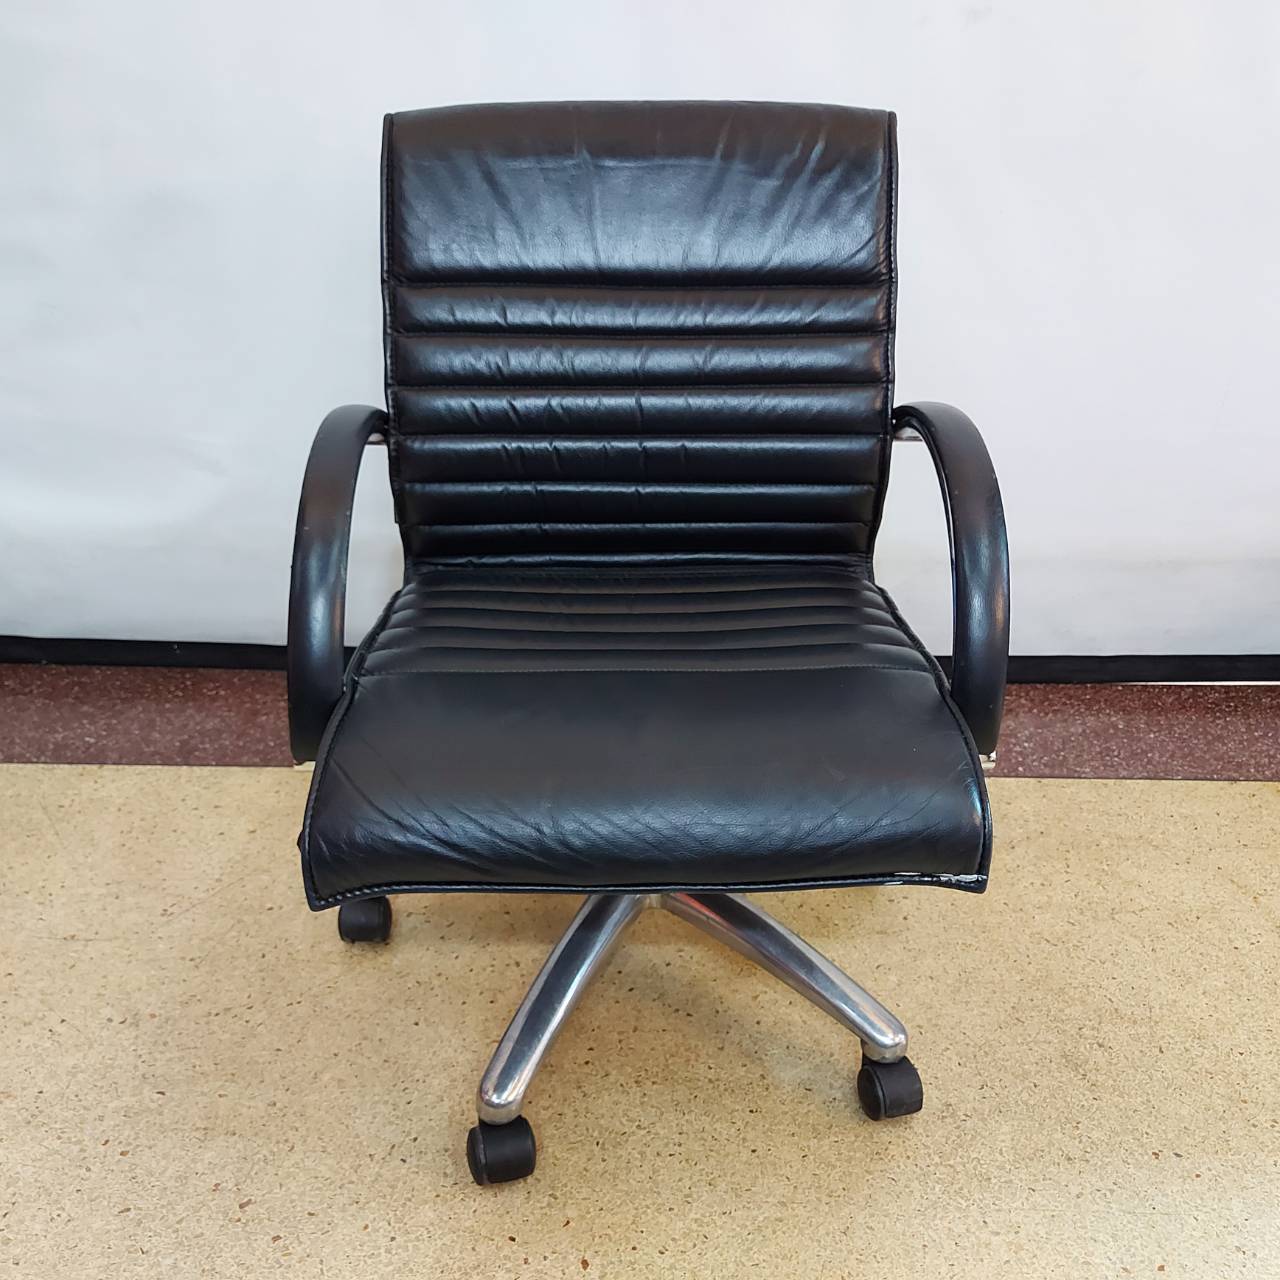 เก้าอี้สำนักงานหนังสีดำพนักกลางหลังรอนมีแขน    ระบบไฮโดริกขามิเนียม